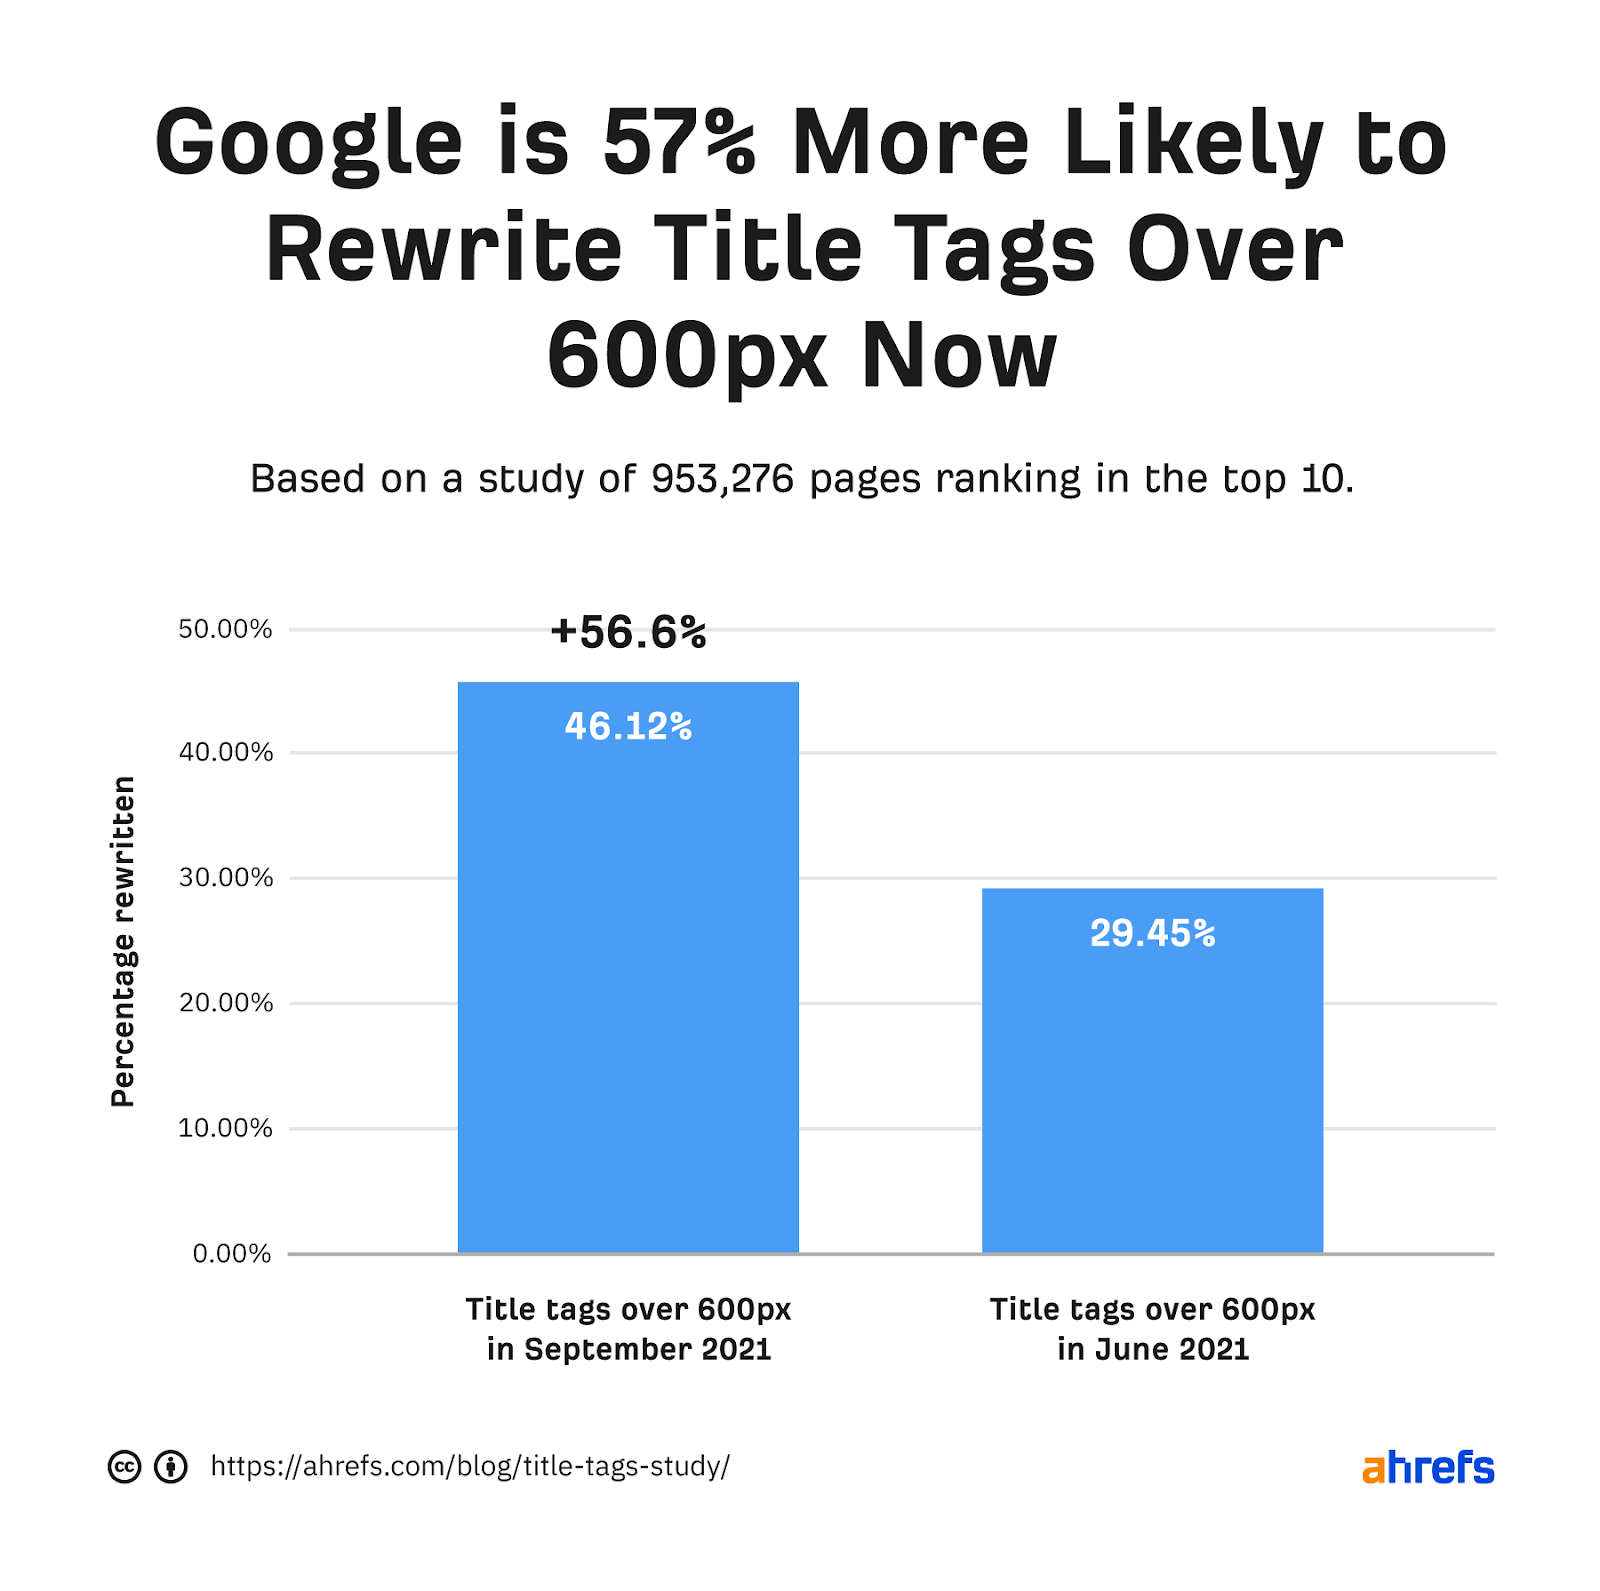 Google'ın artık 600 pikselin üzerindeki başlık etiketlerini yeniden yazma olasılığının %57 daha yüksek olduğunu gösteren çubuk grafik